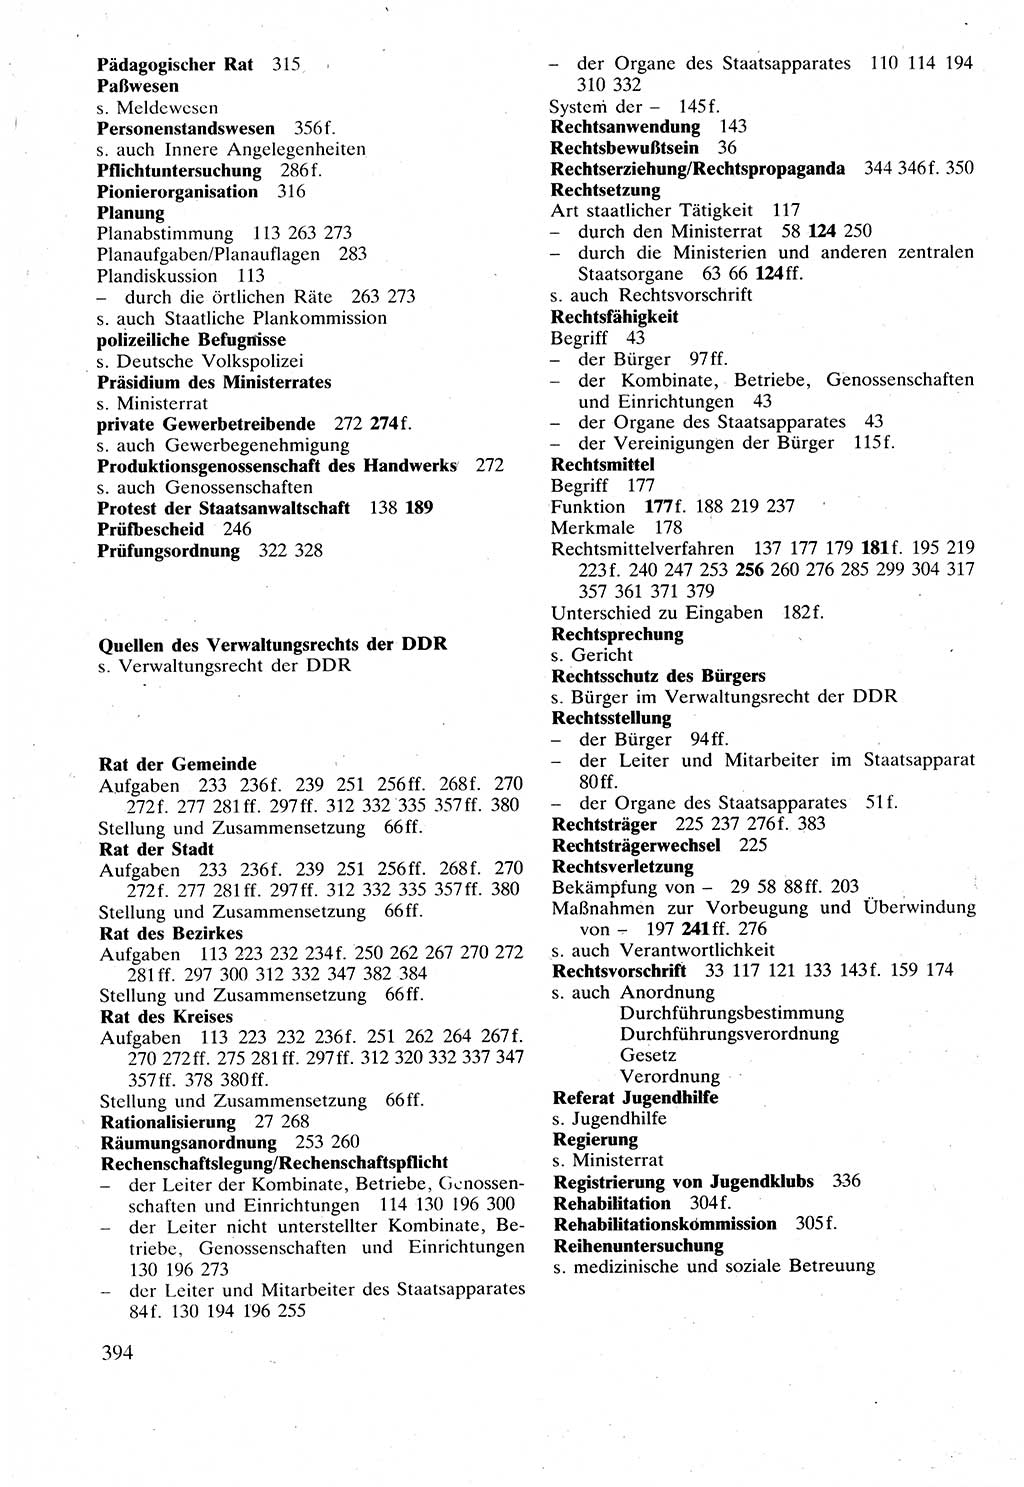 Verwaltungsrecht [Deutsche Demokratische Republik (DDR)], Lehrbuch 1988, Seite 394 (Verw.-R. DDR Lb. 1988, S. 394)